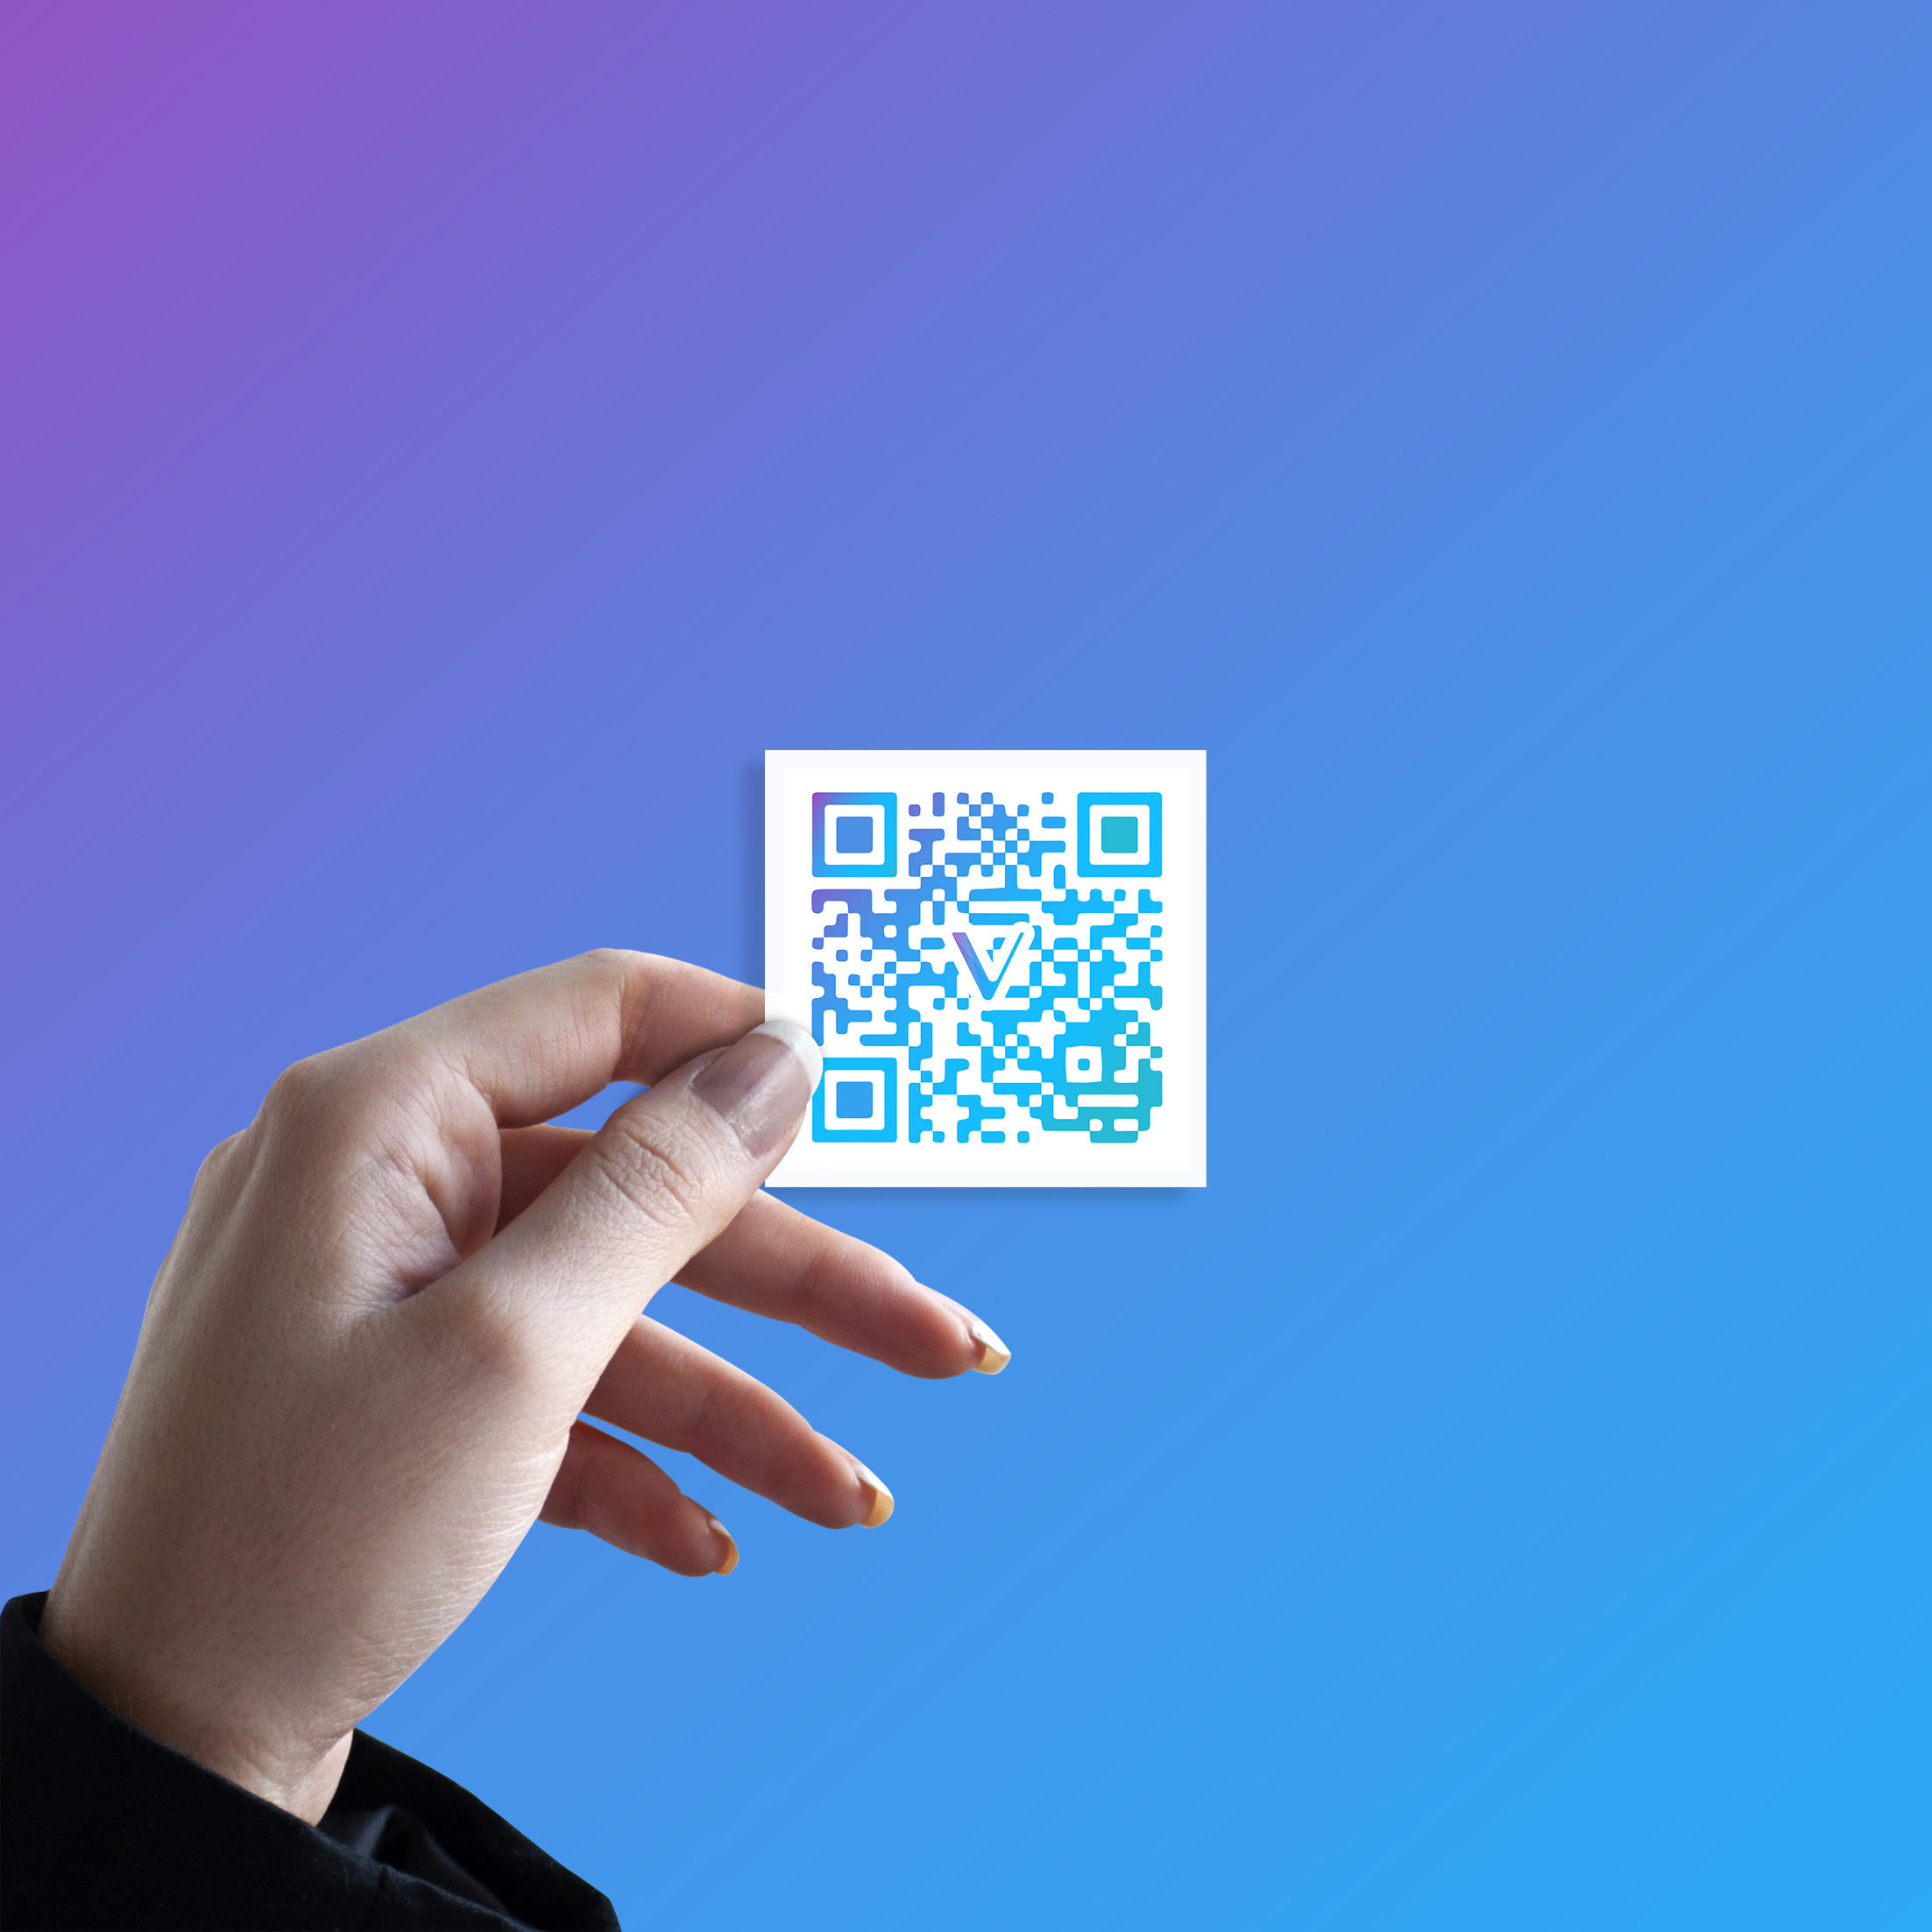 Vechain paper wallet stickers - $VET QR Code Design